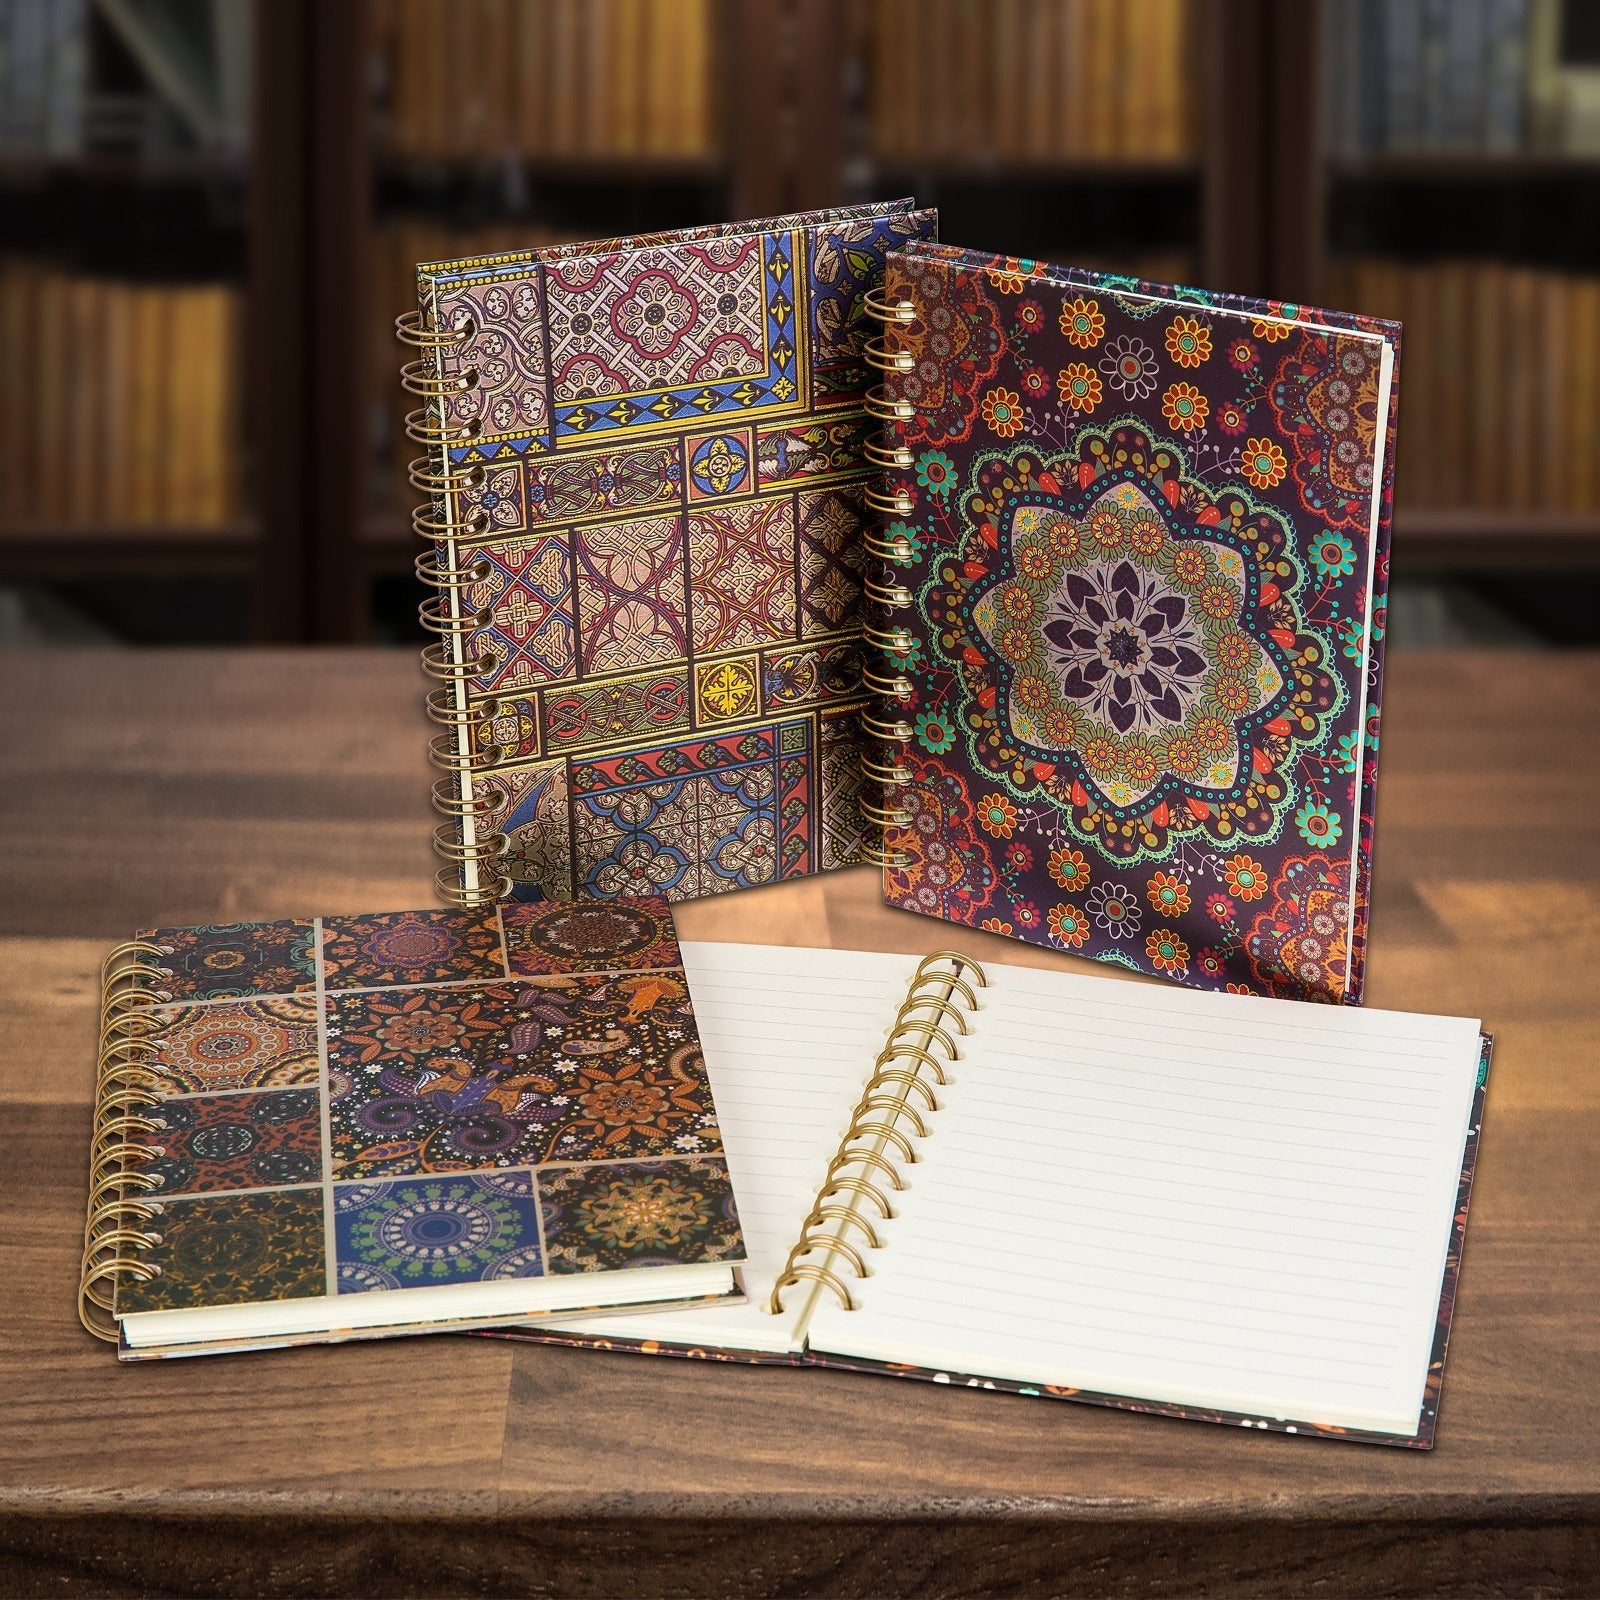 Cuaderno Tapa Dura con Estampado de Mosaico en Relieve. Formato A5